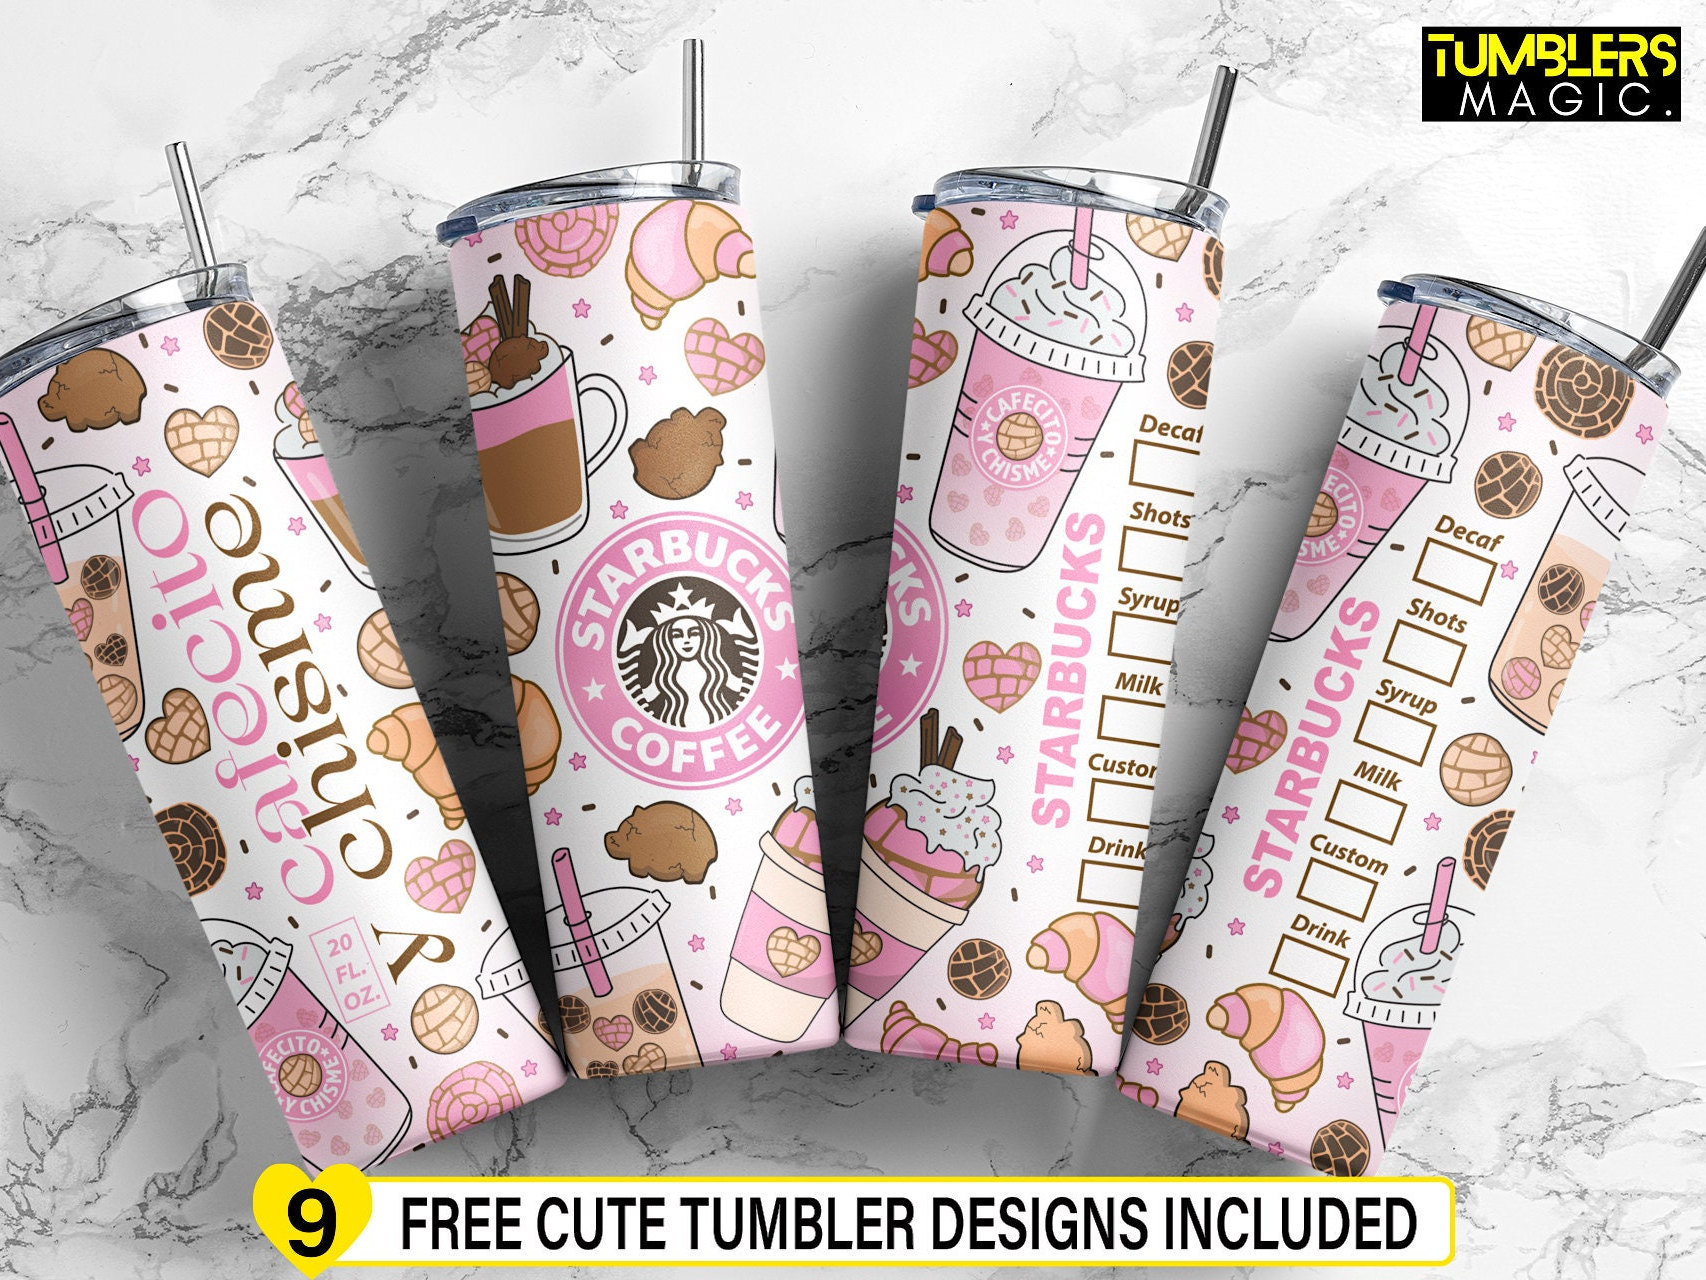 Starbucks Valentine's Day Cups  Dieline - Design, Branding